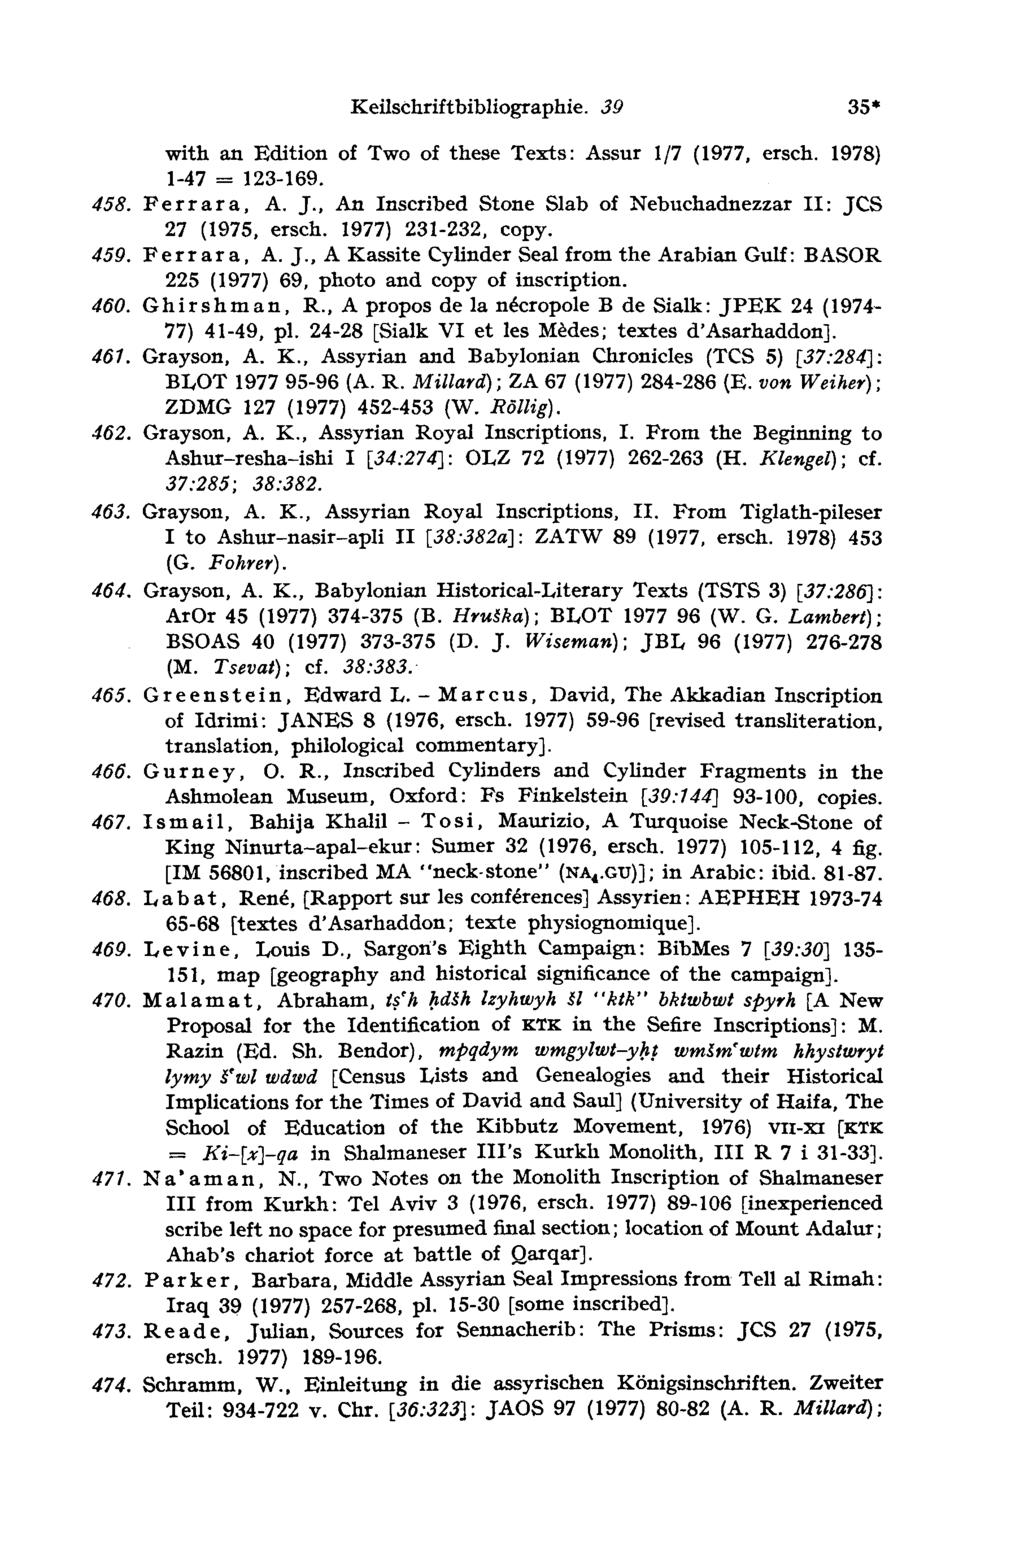 Keilschriftbibliographie. 39 35 with an Edition of Two of these Texts: Assur 1/7 (1977, ersch. 1978) 123-169. = 1-47 458. Ferrara, A. J.